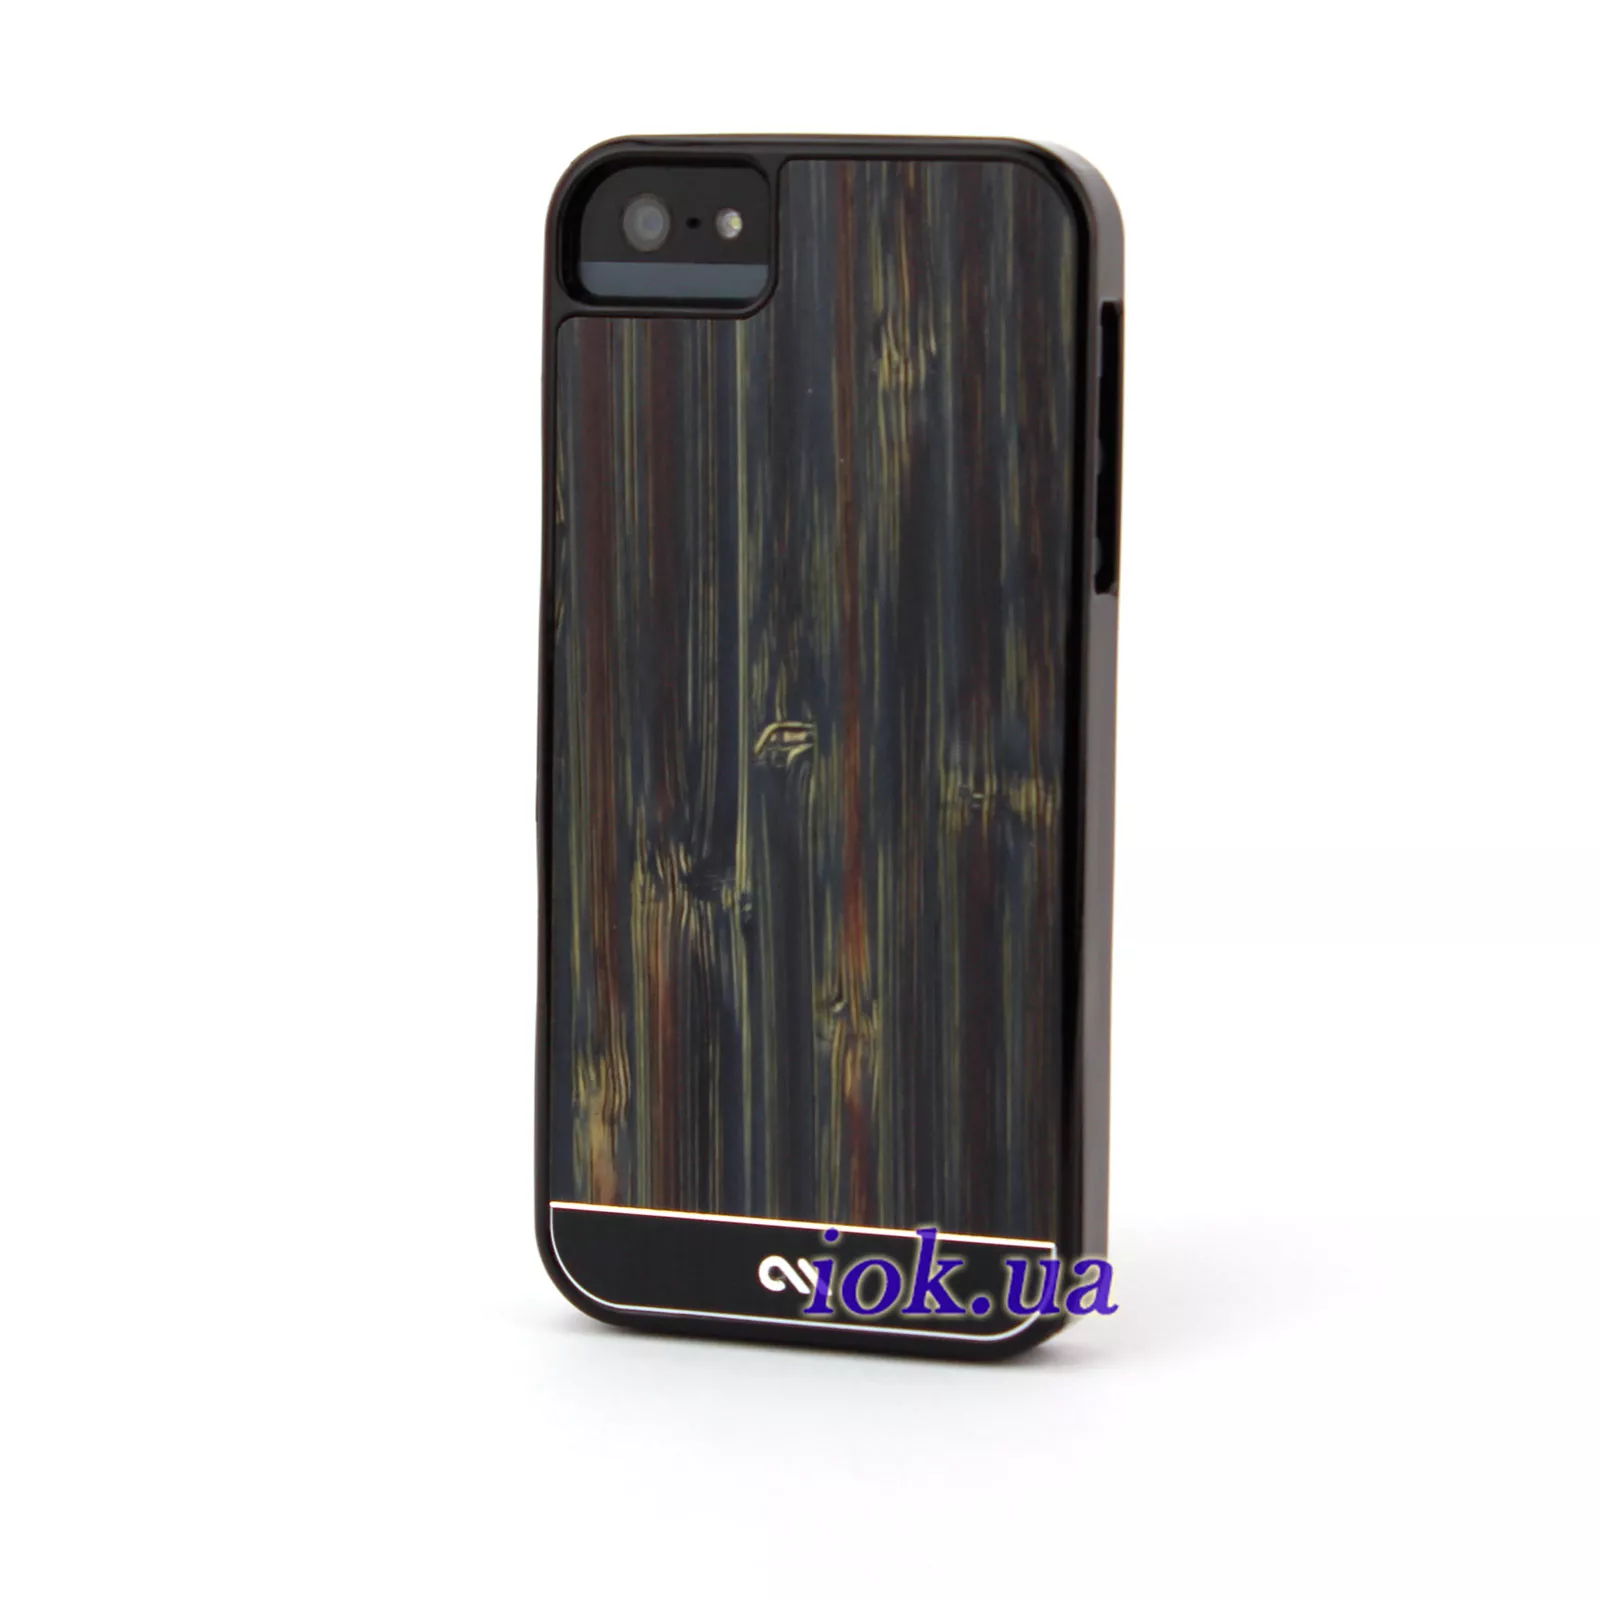 Чехол Case-Mate с деревом и пластиком на iPhone 5/5S